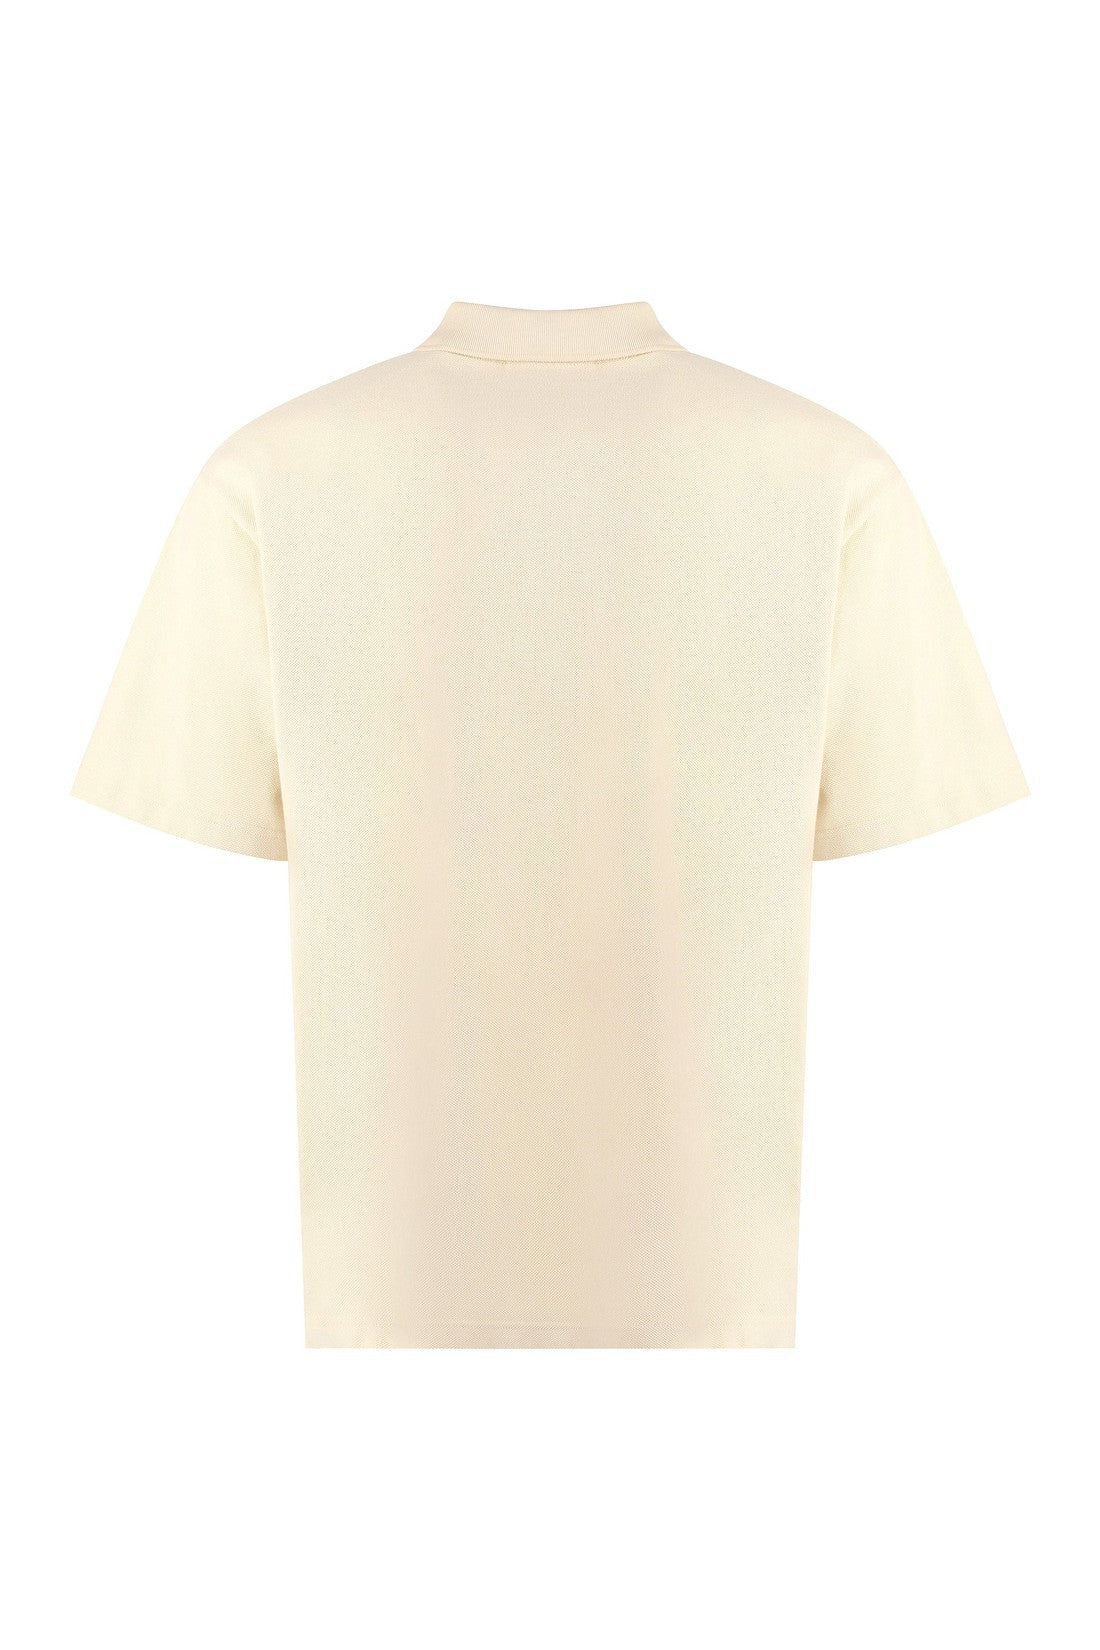 Maison Kitsuné-OUTLET-SALE-Cotton-piqué polo shirt-ARCHIVIST